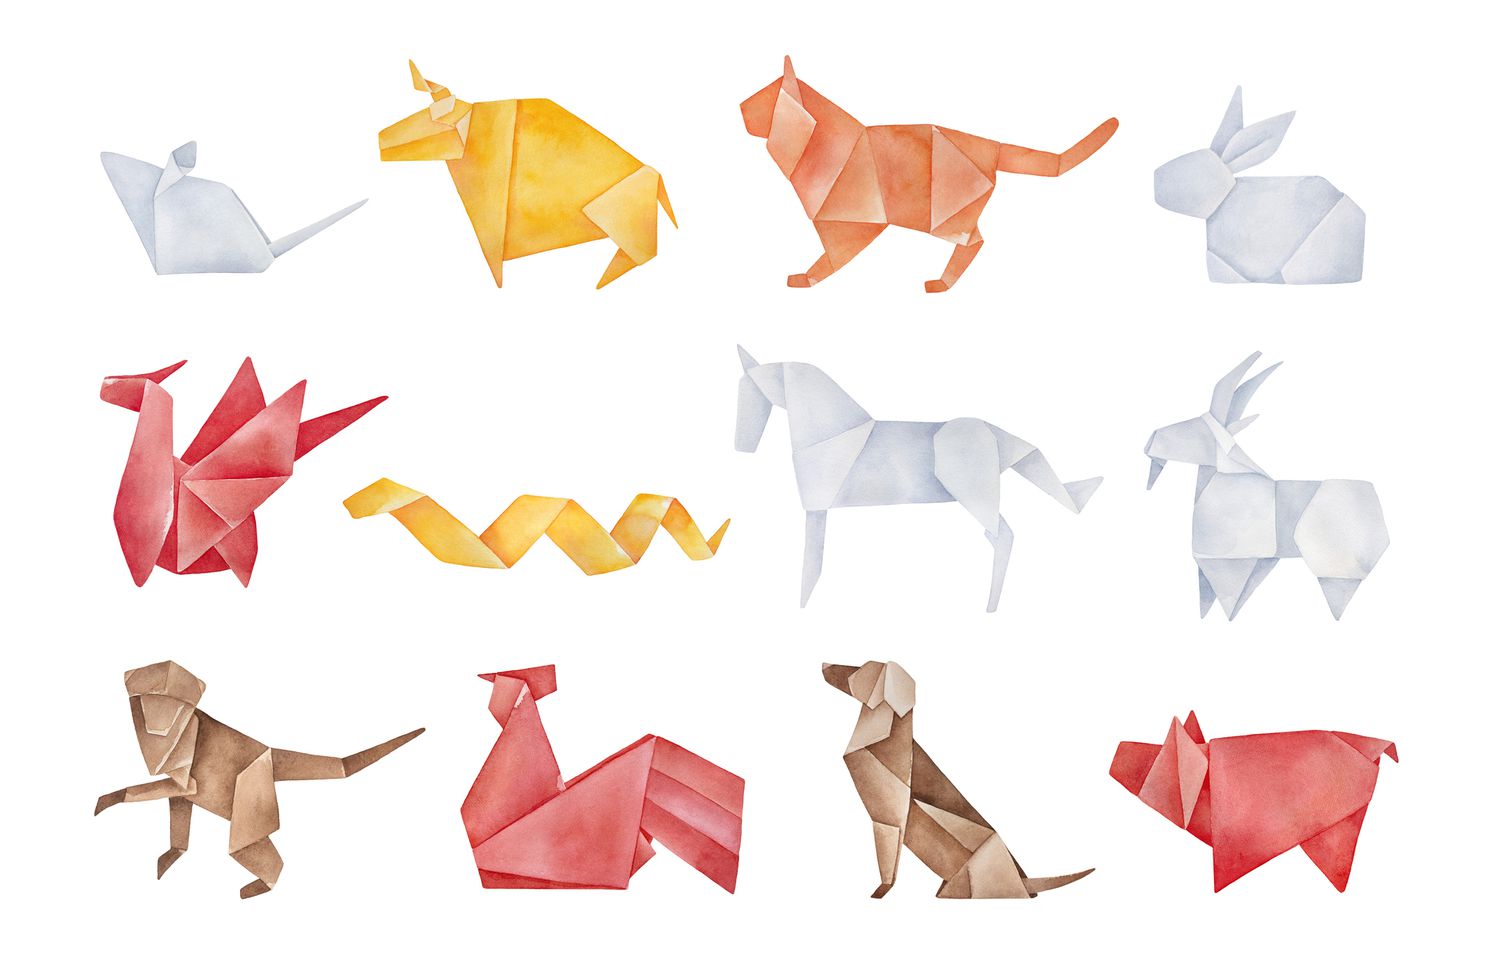 Paquete de origami plegado de doce animales tradicionales del zodiaco chino. Colores rojo, amarillo, marrón, naranja y gris claro. Dibujo gráfico en acuarela hecho a mano